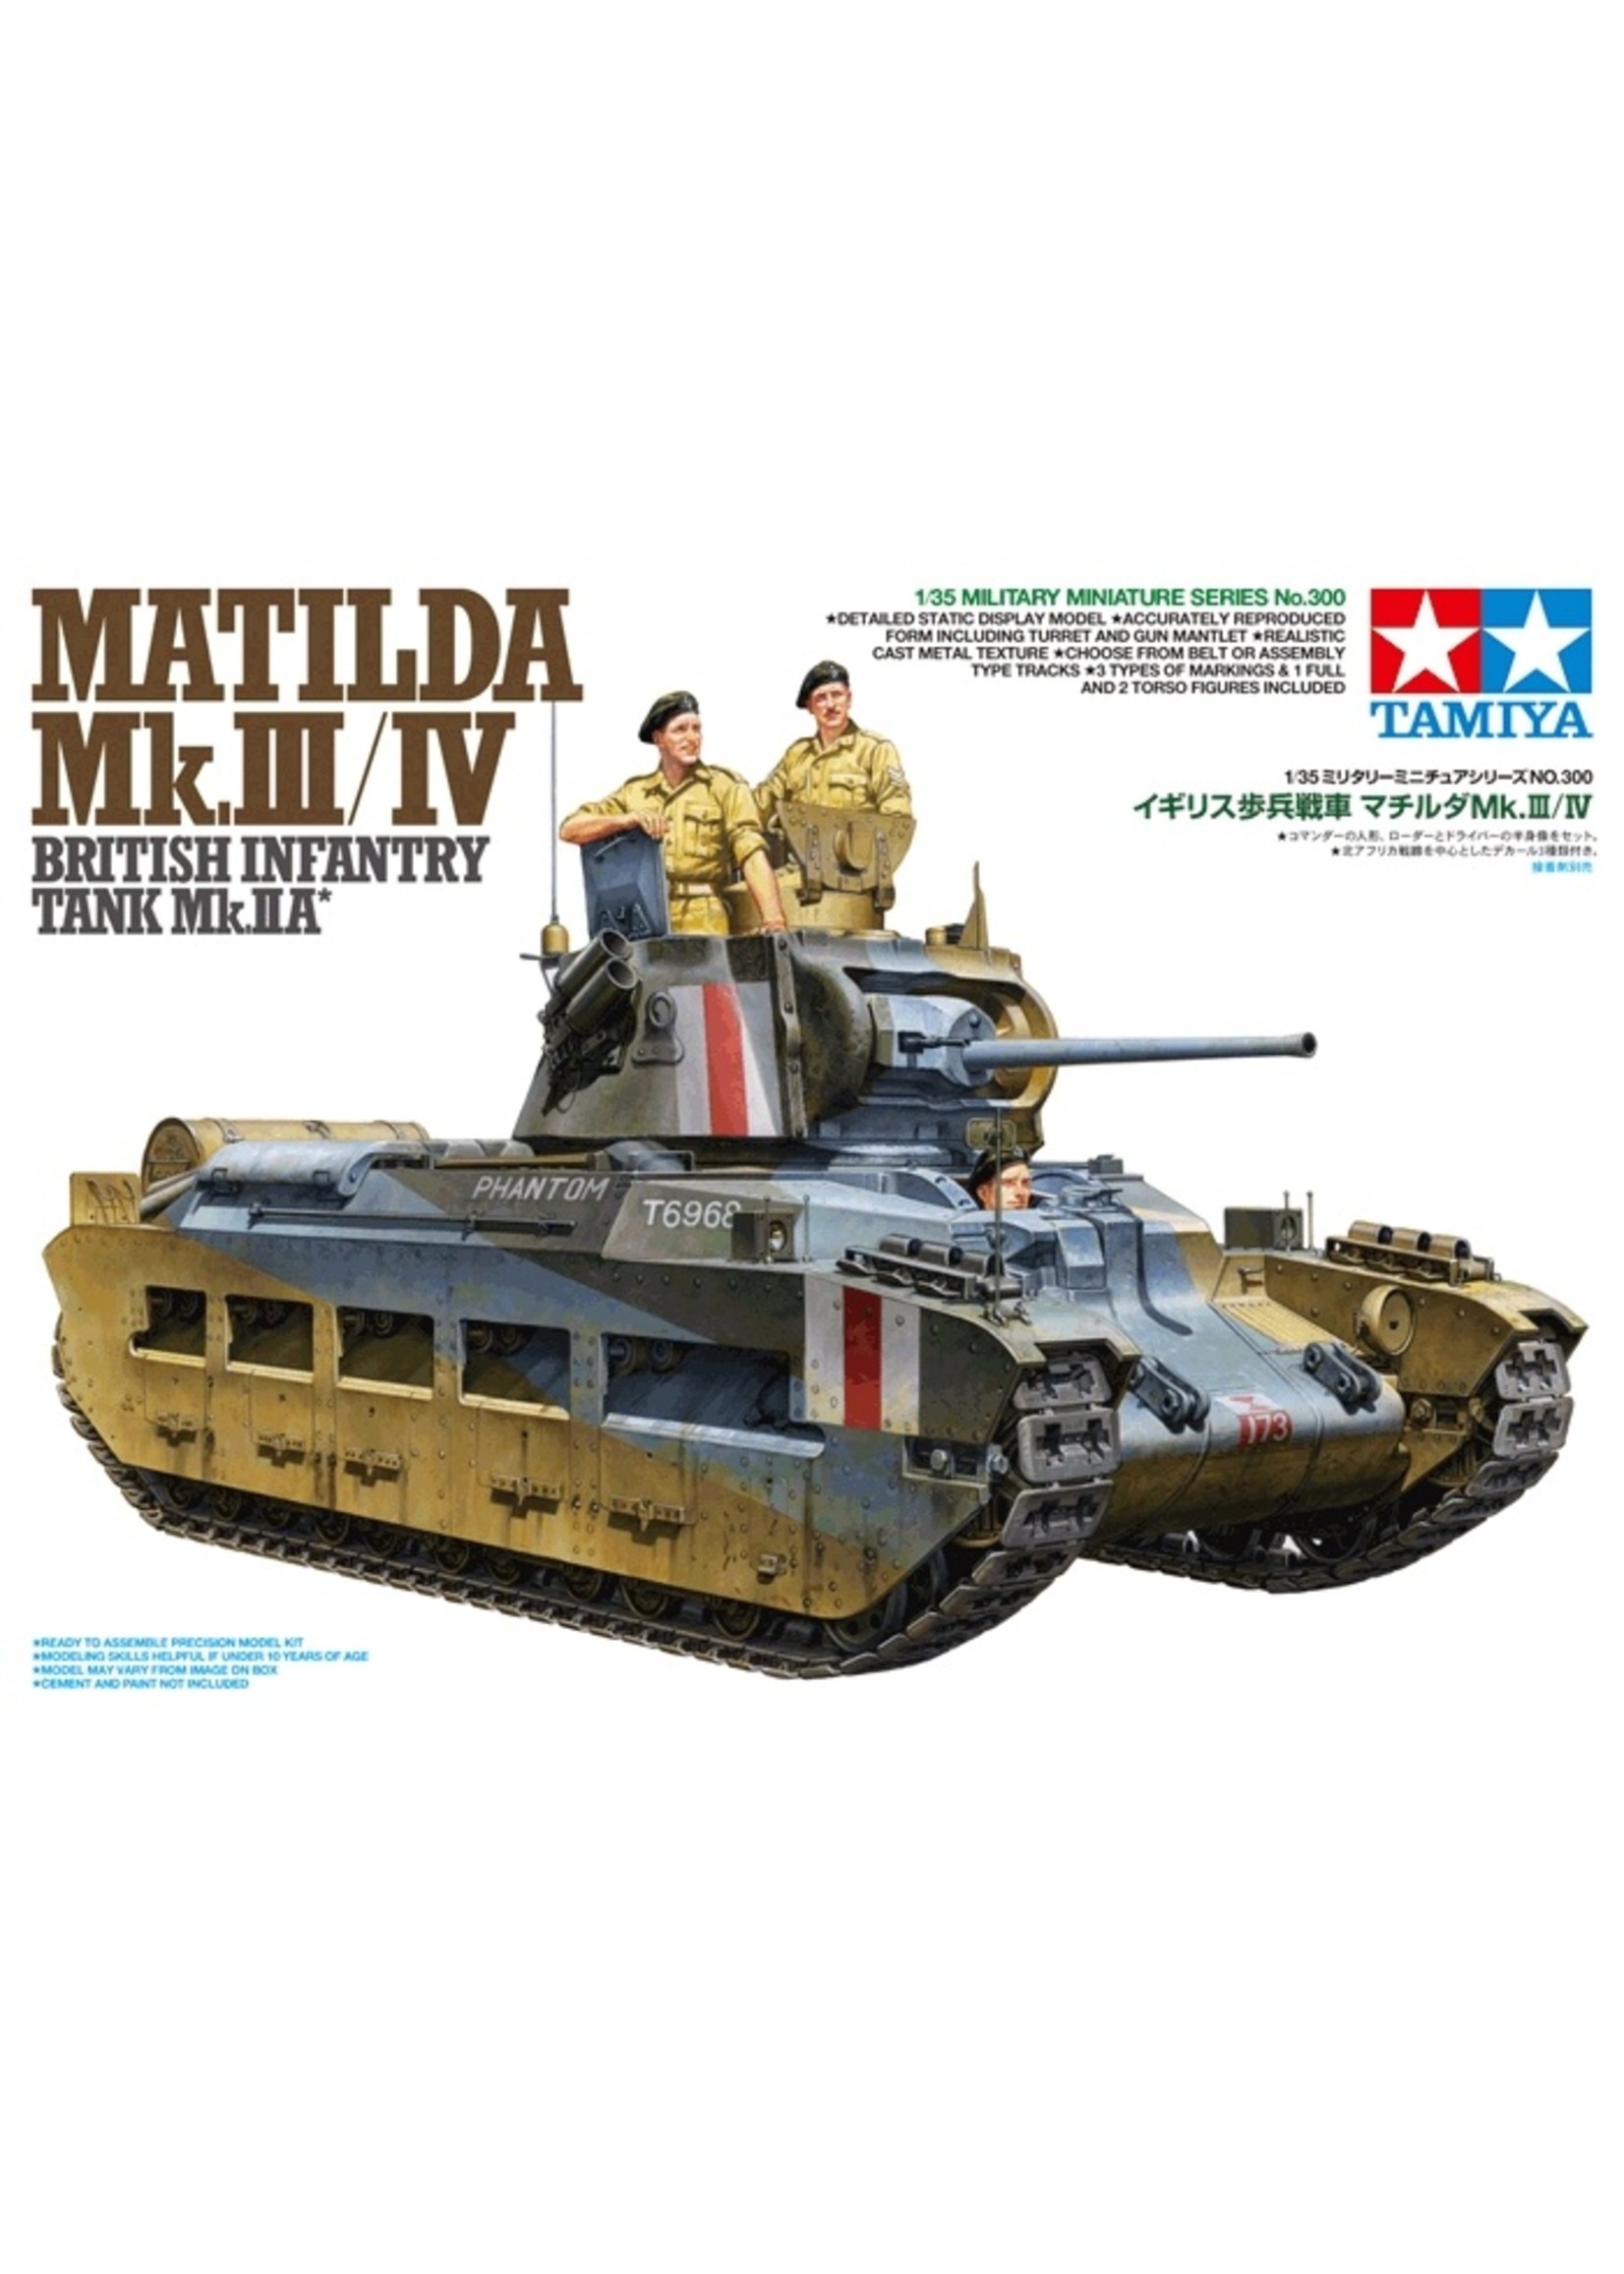 Tamiya 35300 - 1/35 Matilda Mk.III/IV